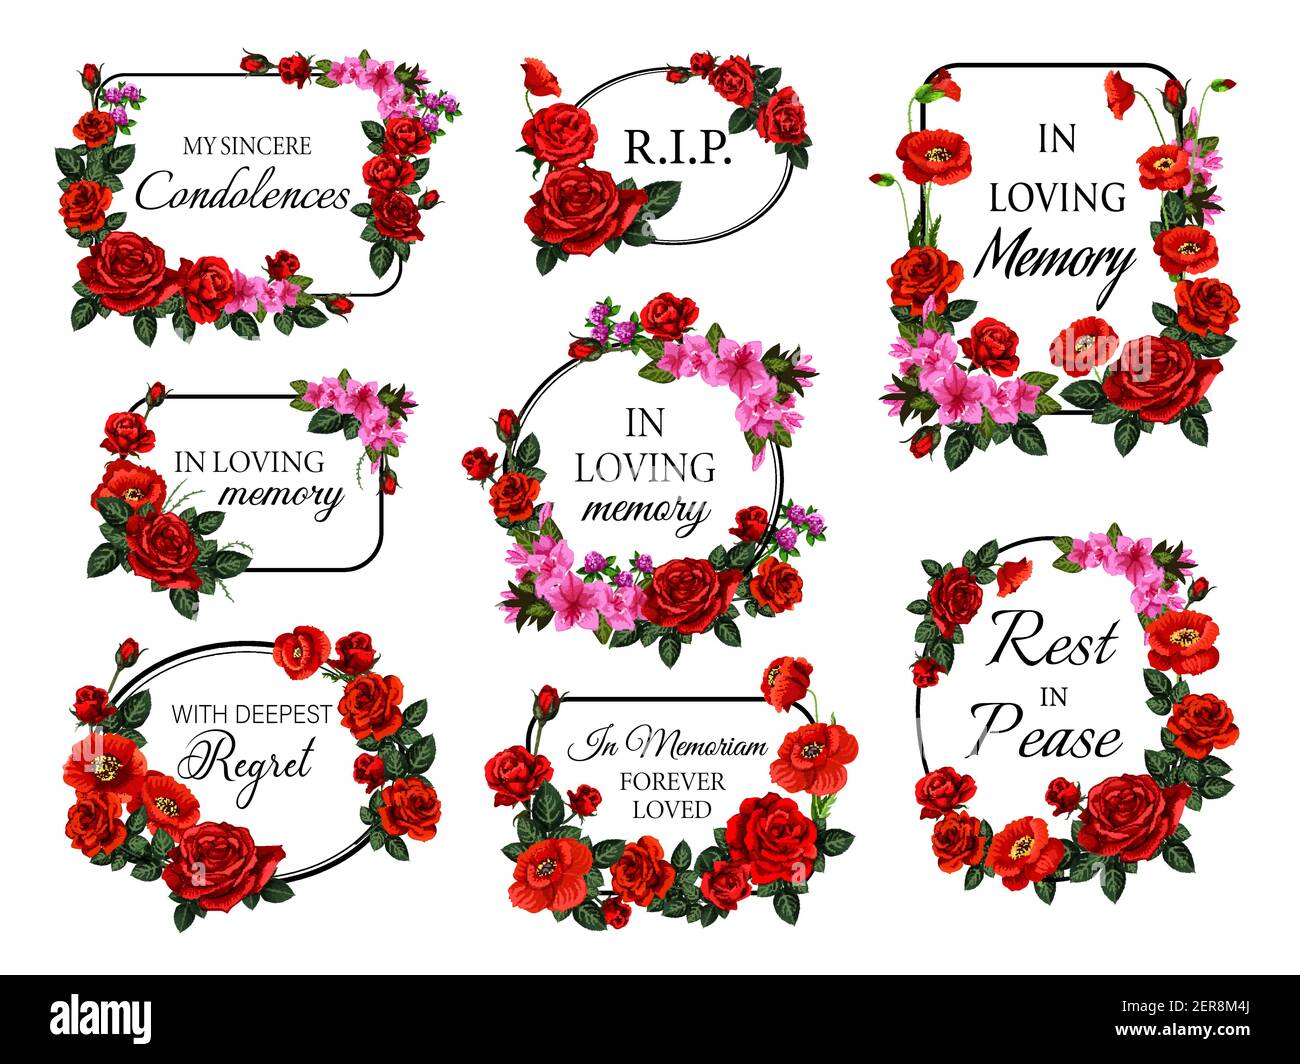 Cadres ronds et carrés funéraires, bordures de fleurs. Cartes vectorielles funéraires décorées de fleurs et de bourgeons roses, de pavot rouge, d'azalées et de trèfle Illustration de Vecteur